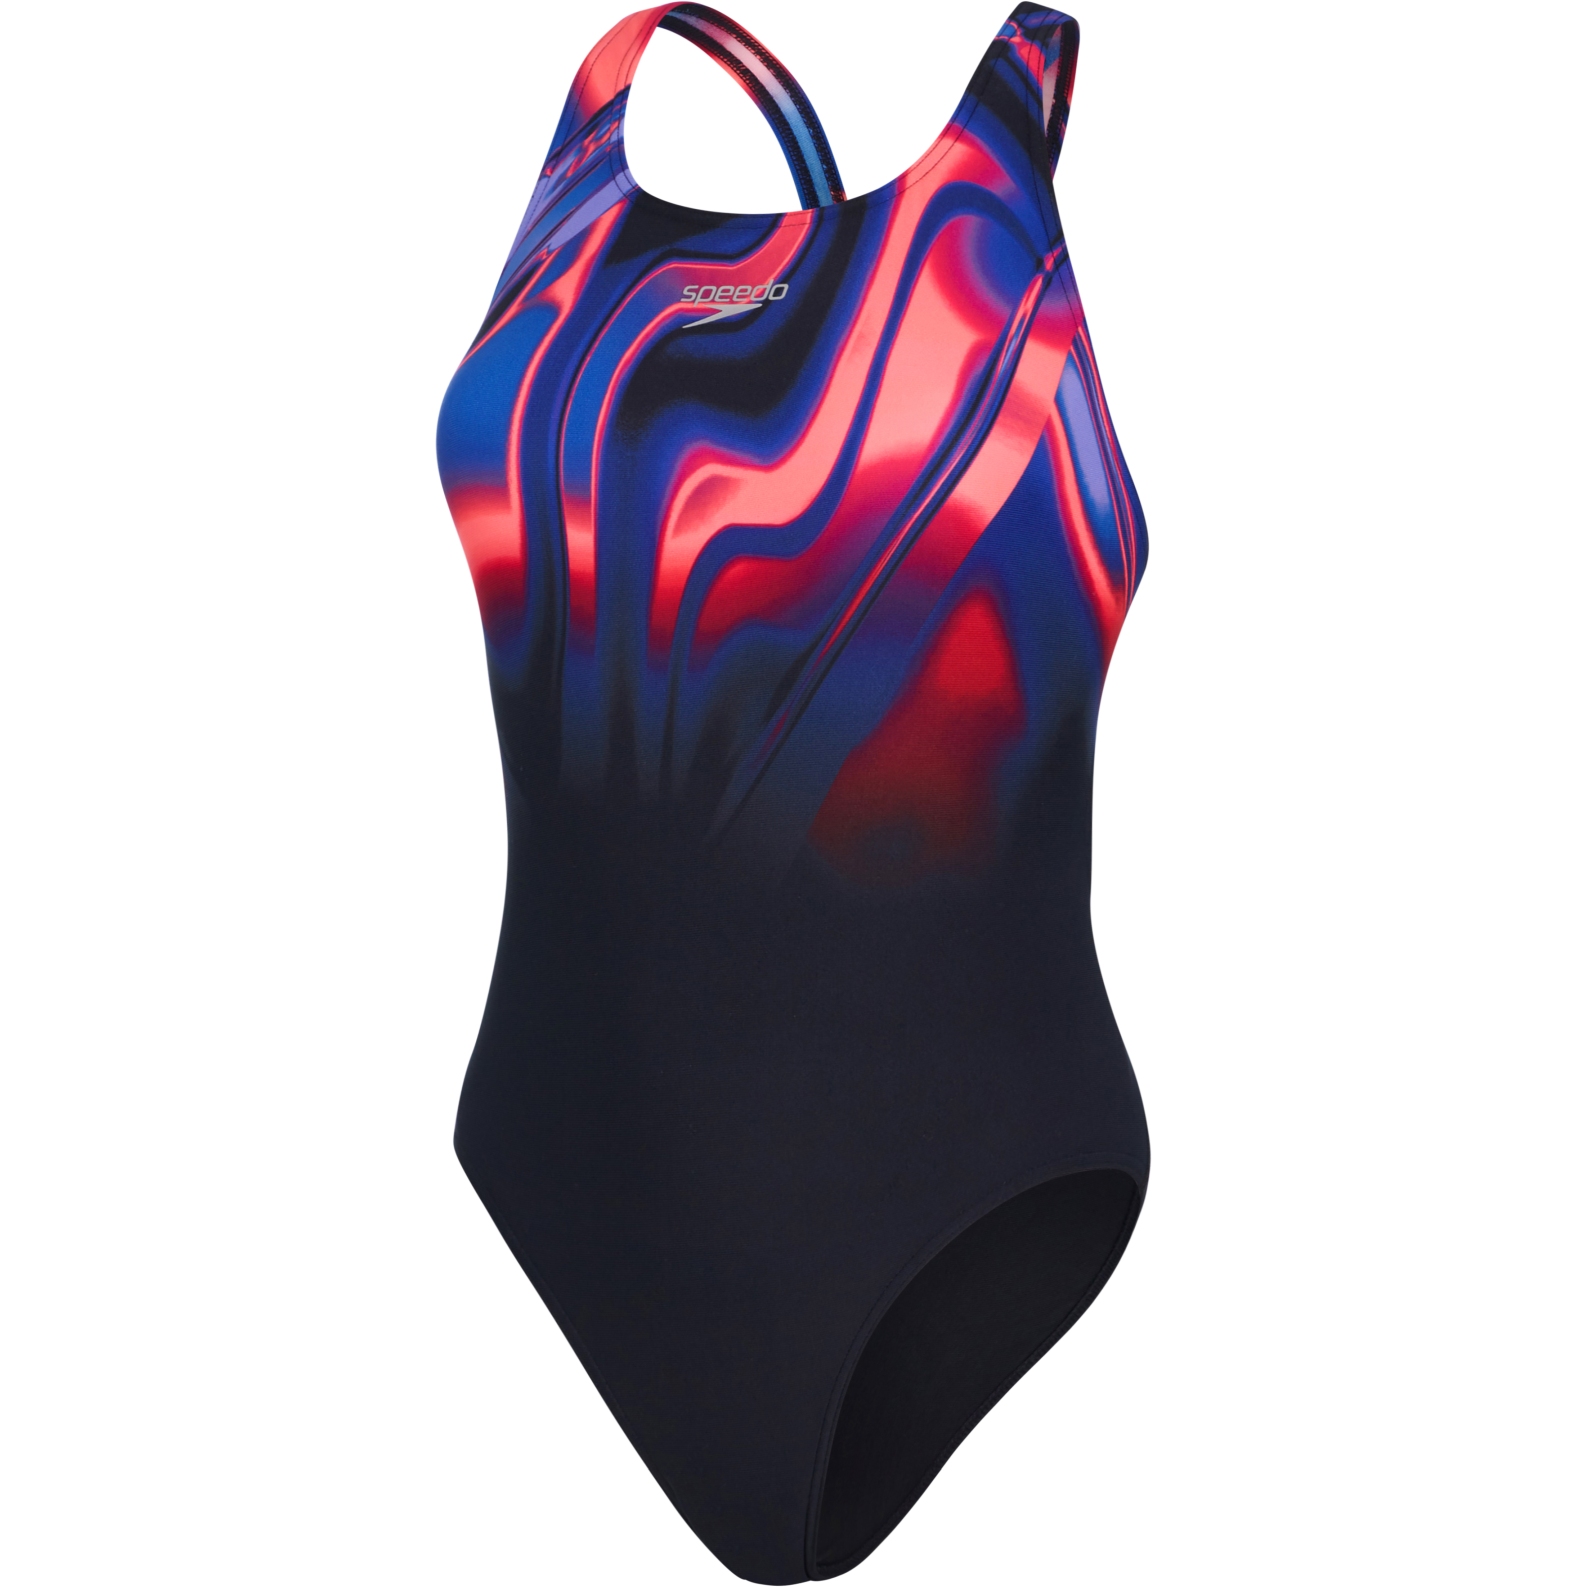 Produktbild von Speedo Placement Digital Powerback Badeanzug Damen - black/phoenix red/blue flame/ultraviolet